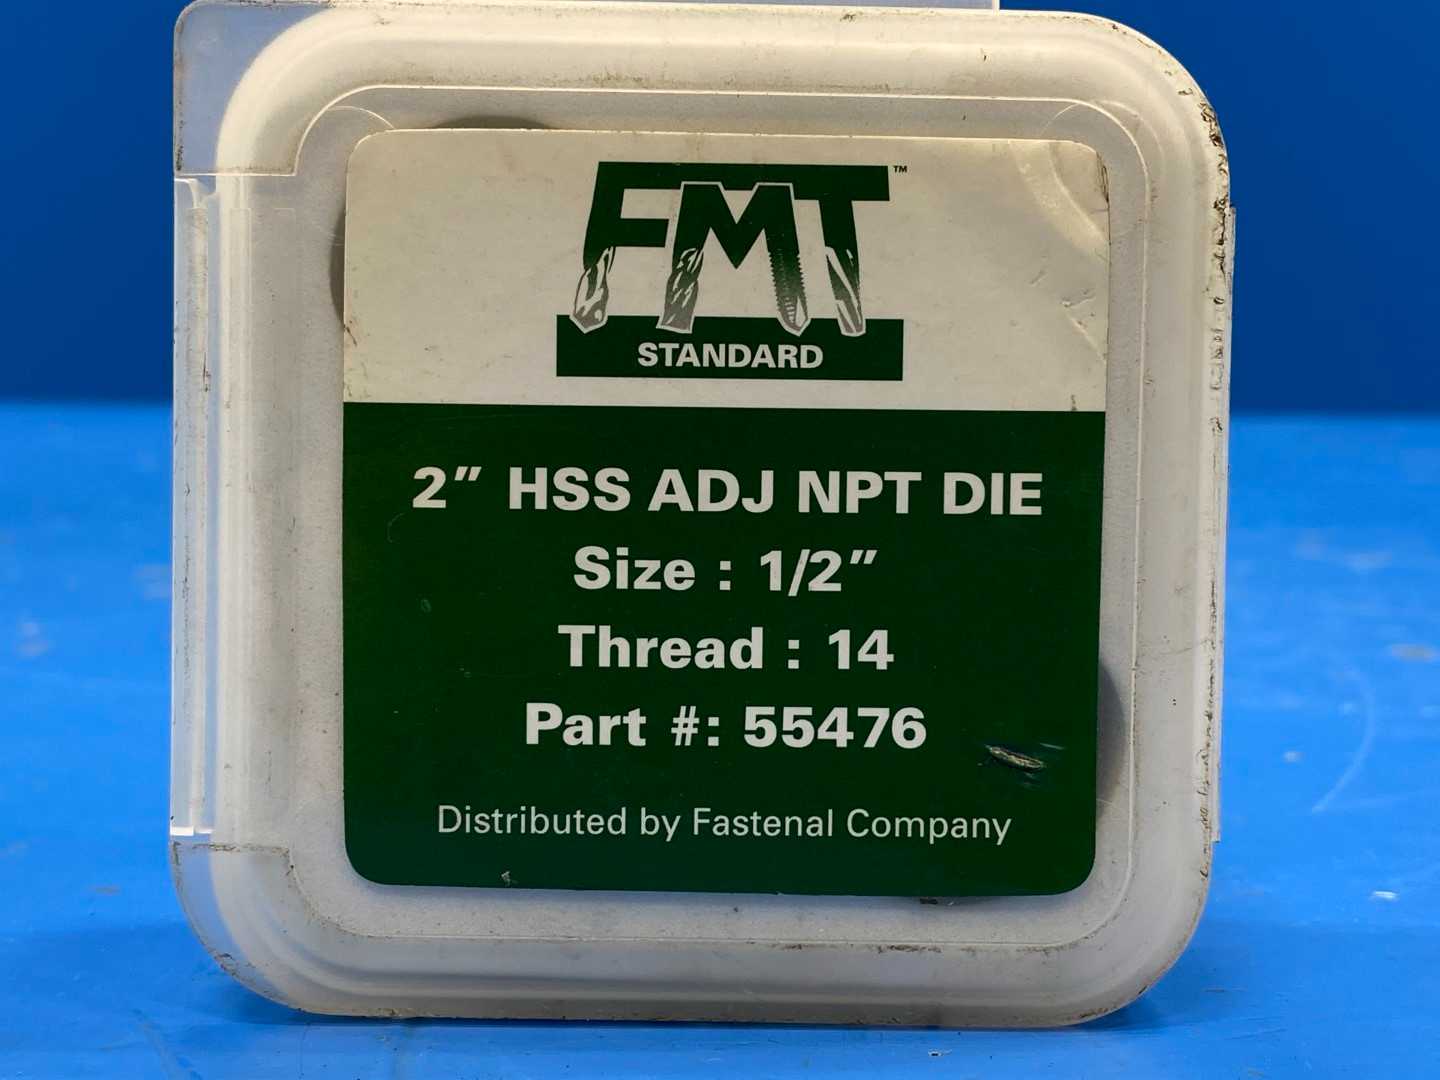 FMT Standard 2" HSS ADJ NPT DIE Size: 1/2 Thread 14`